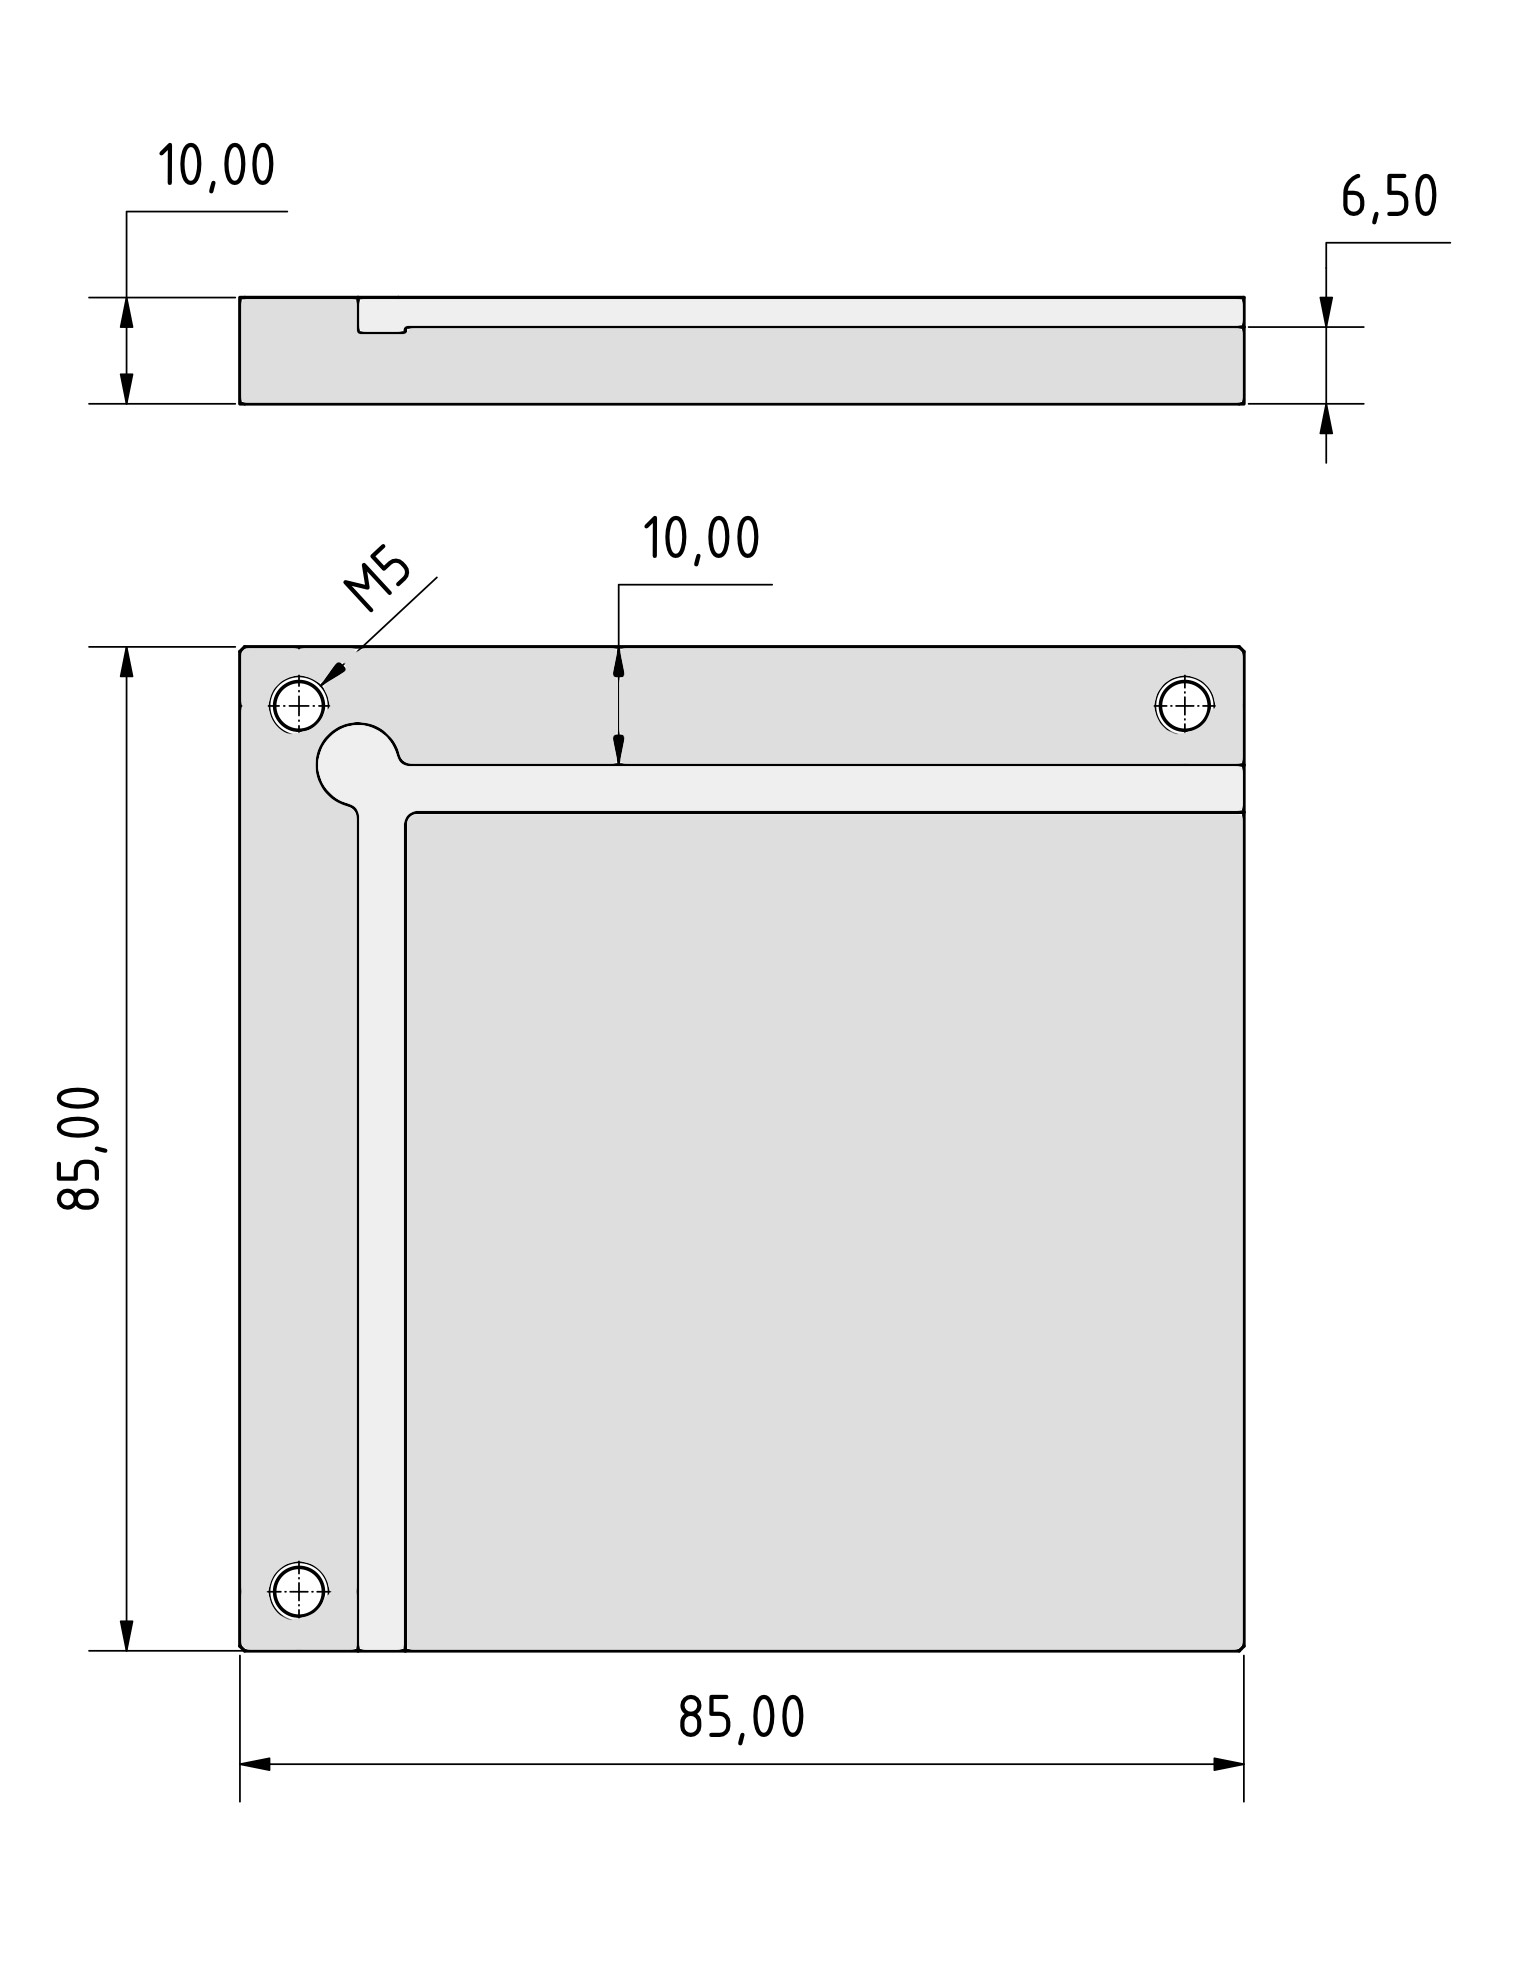 CNC Tastplatte für Estlcam - Präzise Werkzeugkalibrierung, 26,93 €